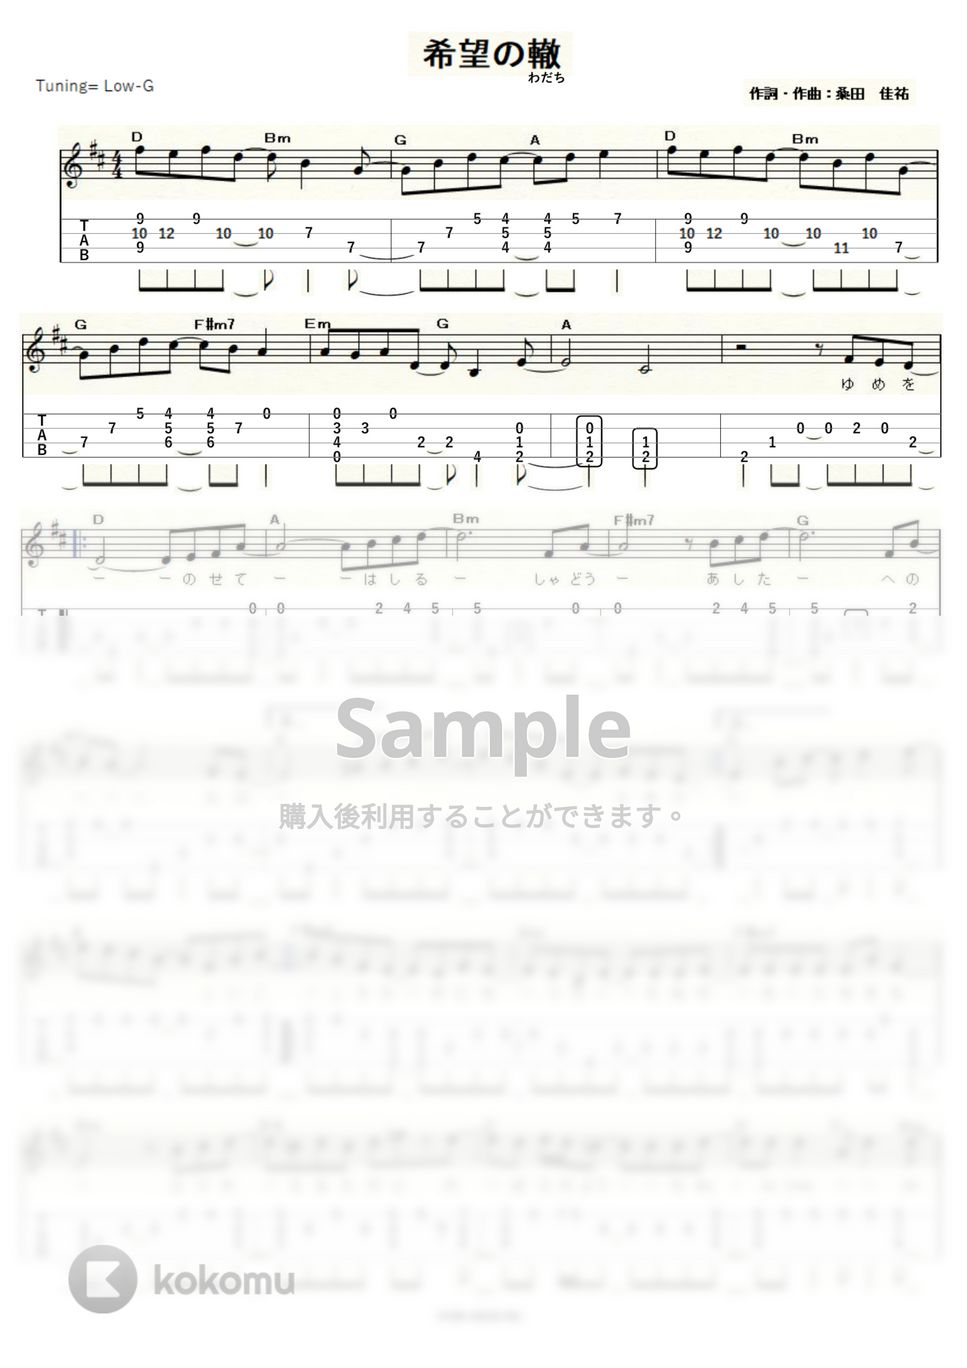 サザンオールスターズ - 希望の轍（わだち） (ｳｸﾚﾚｿﾛ/Low-G/中級) by ukulelepapa